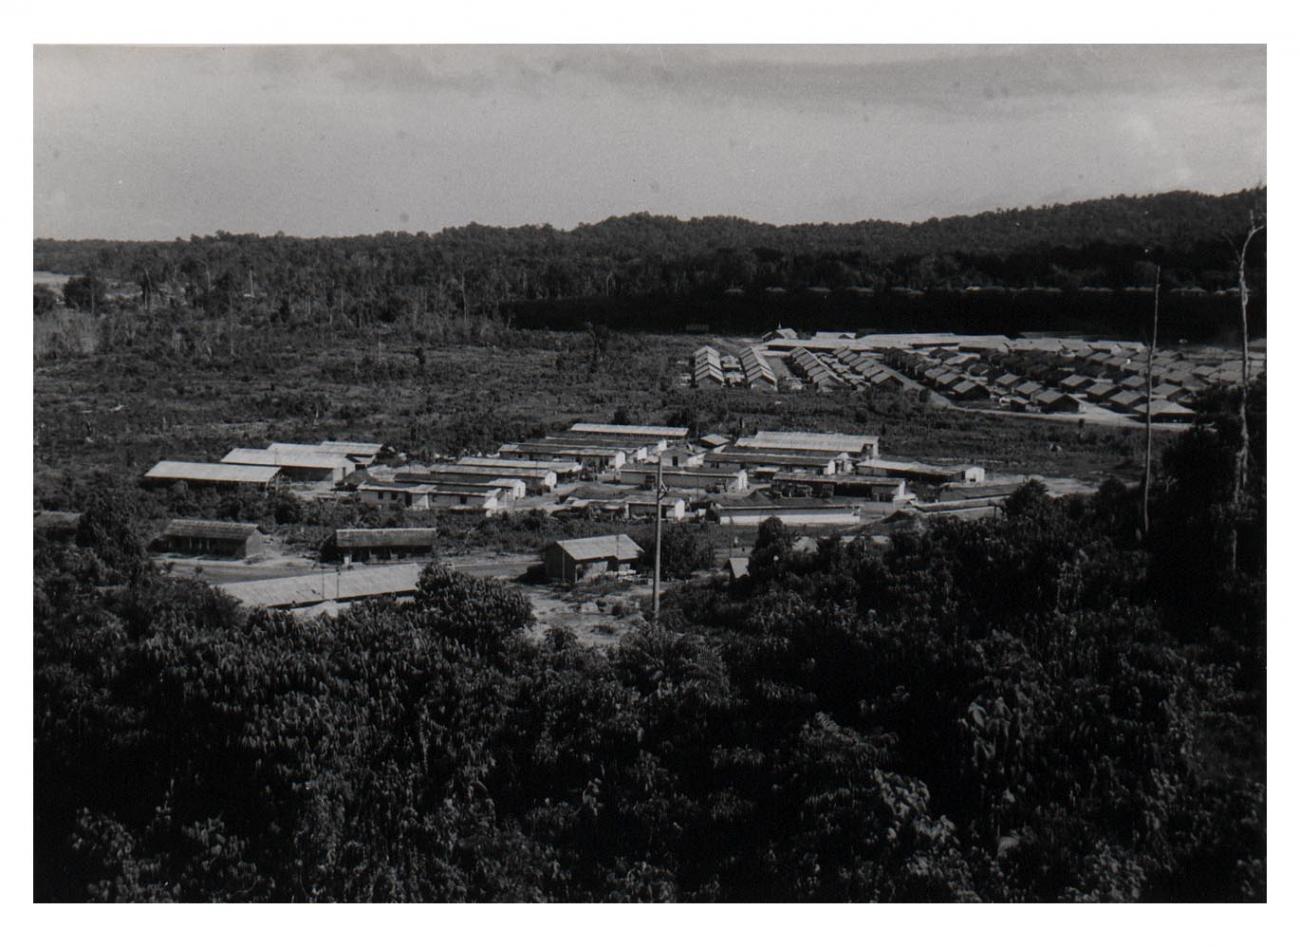 BD/54/11 - 
panorama kampong Sorong
